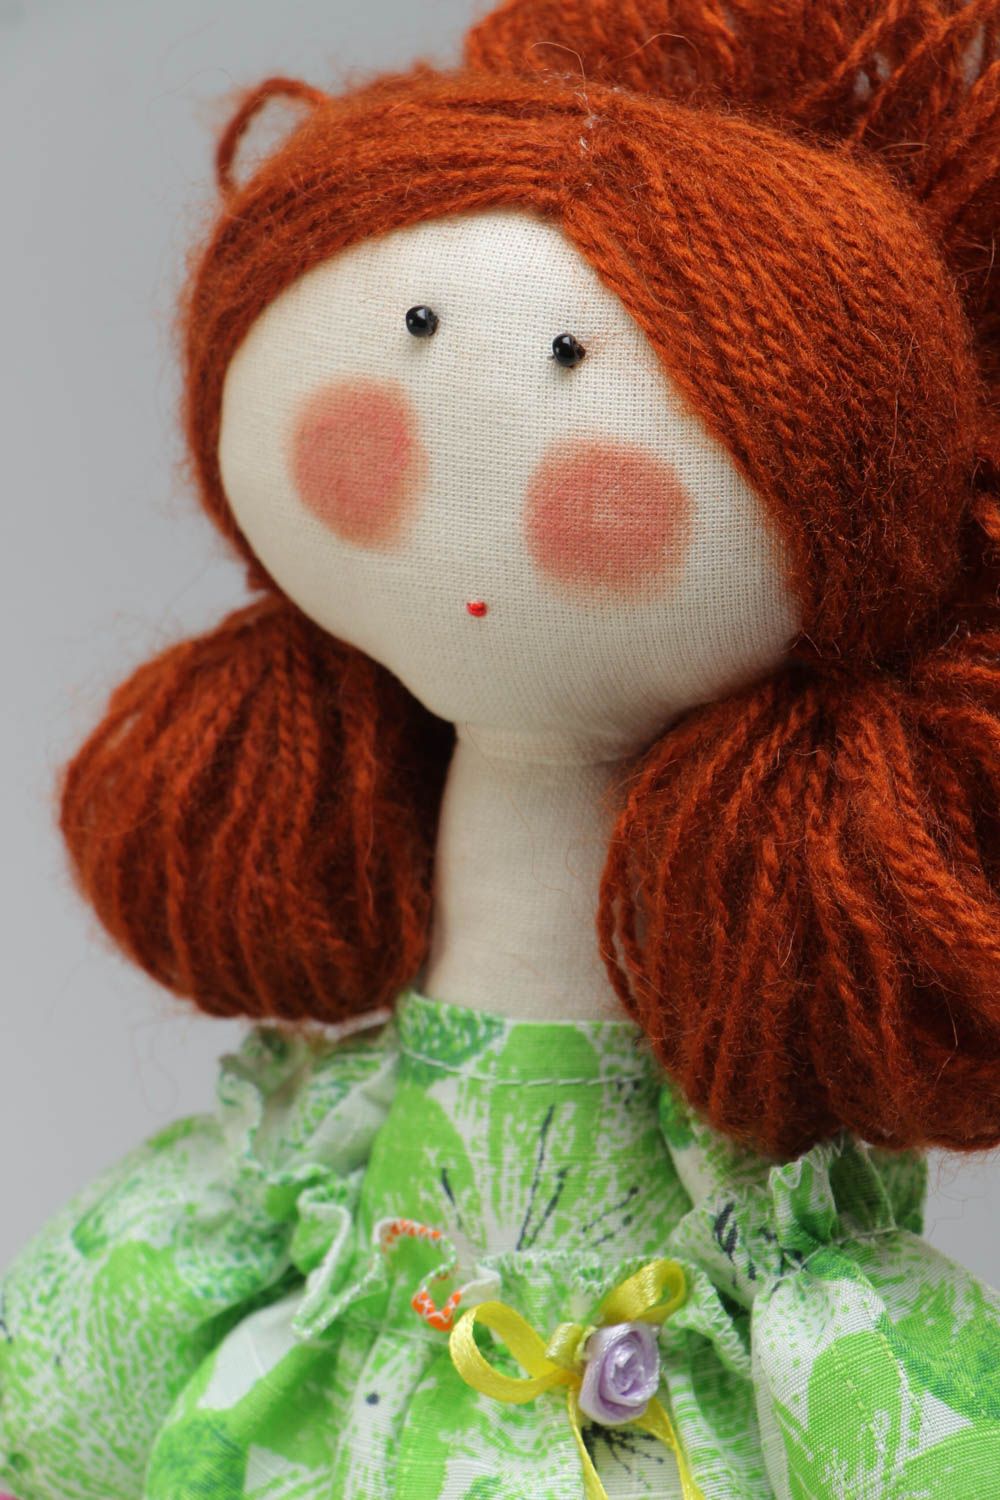 Игрушка кукла из ткани в платье смешная с корзинкой милая небольшая хэнд мейд  фото 3